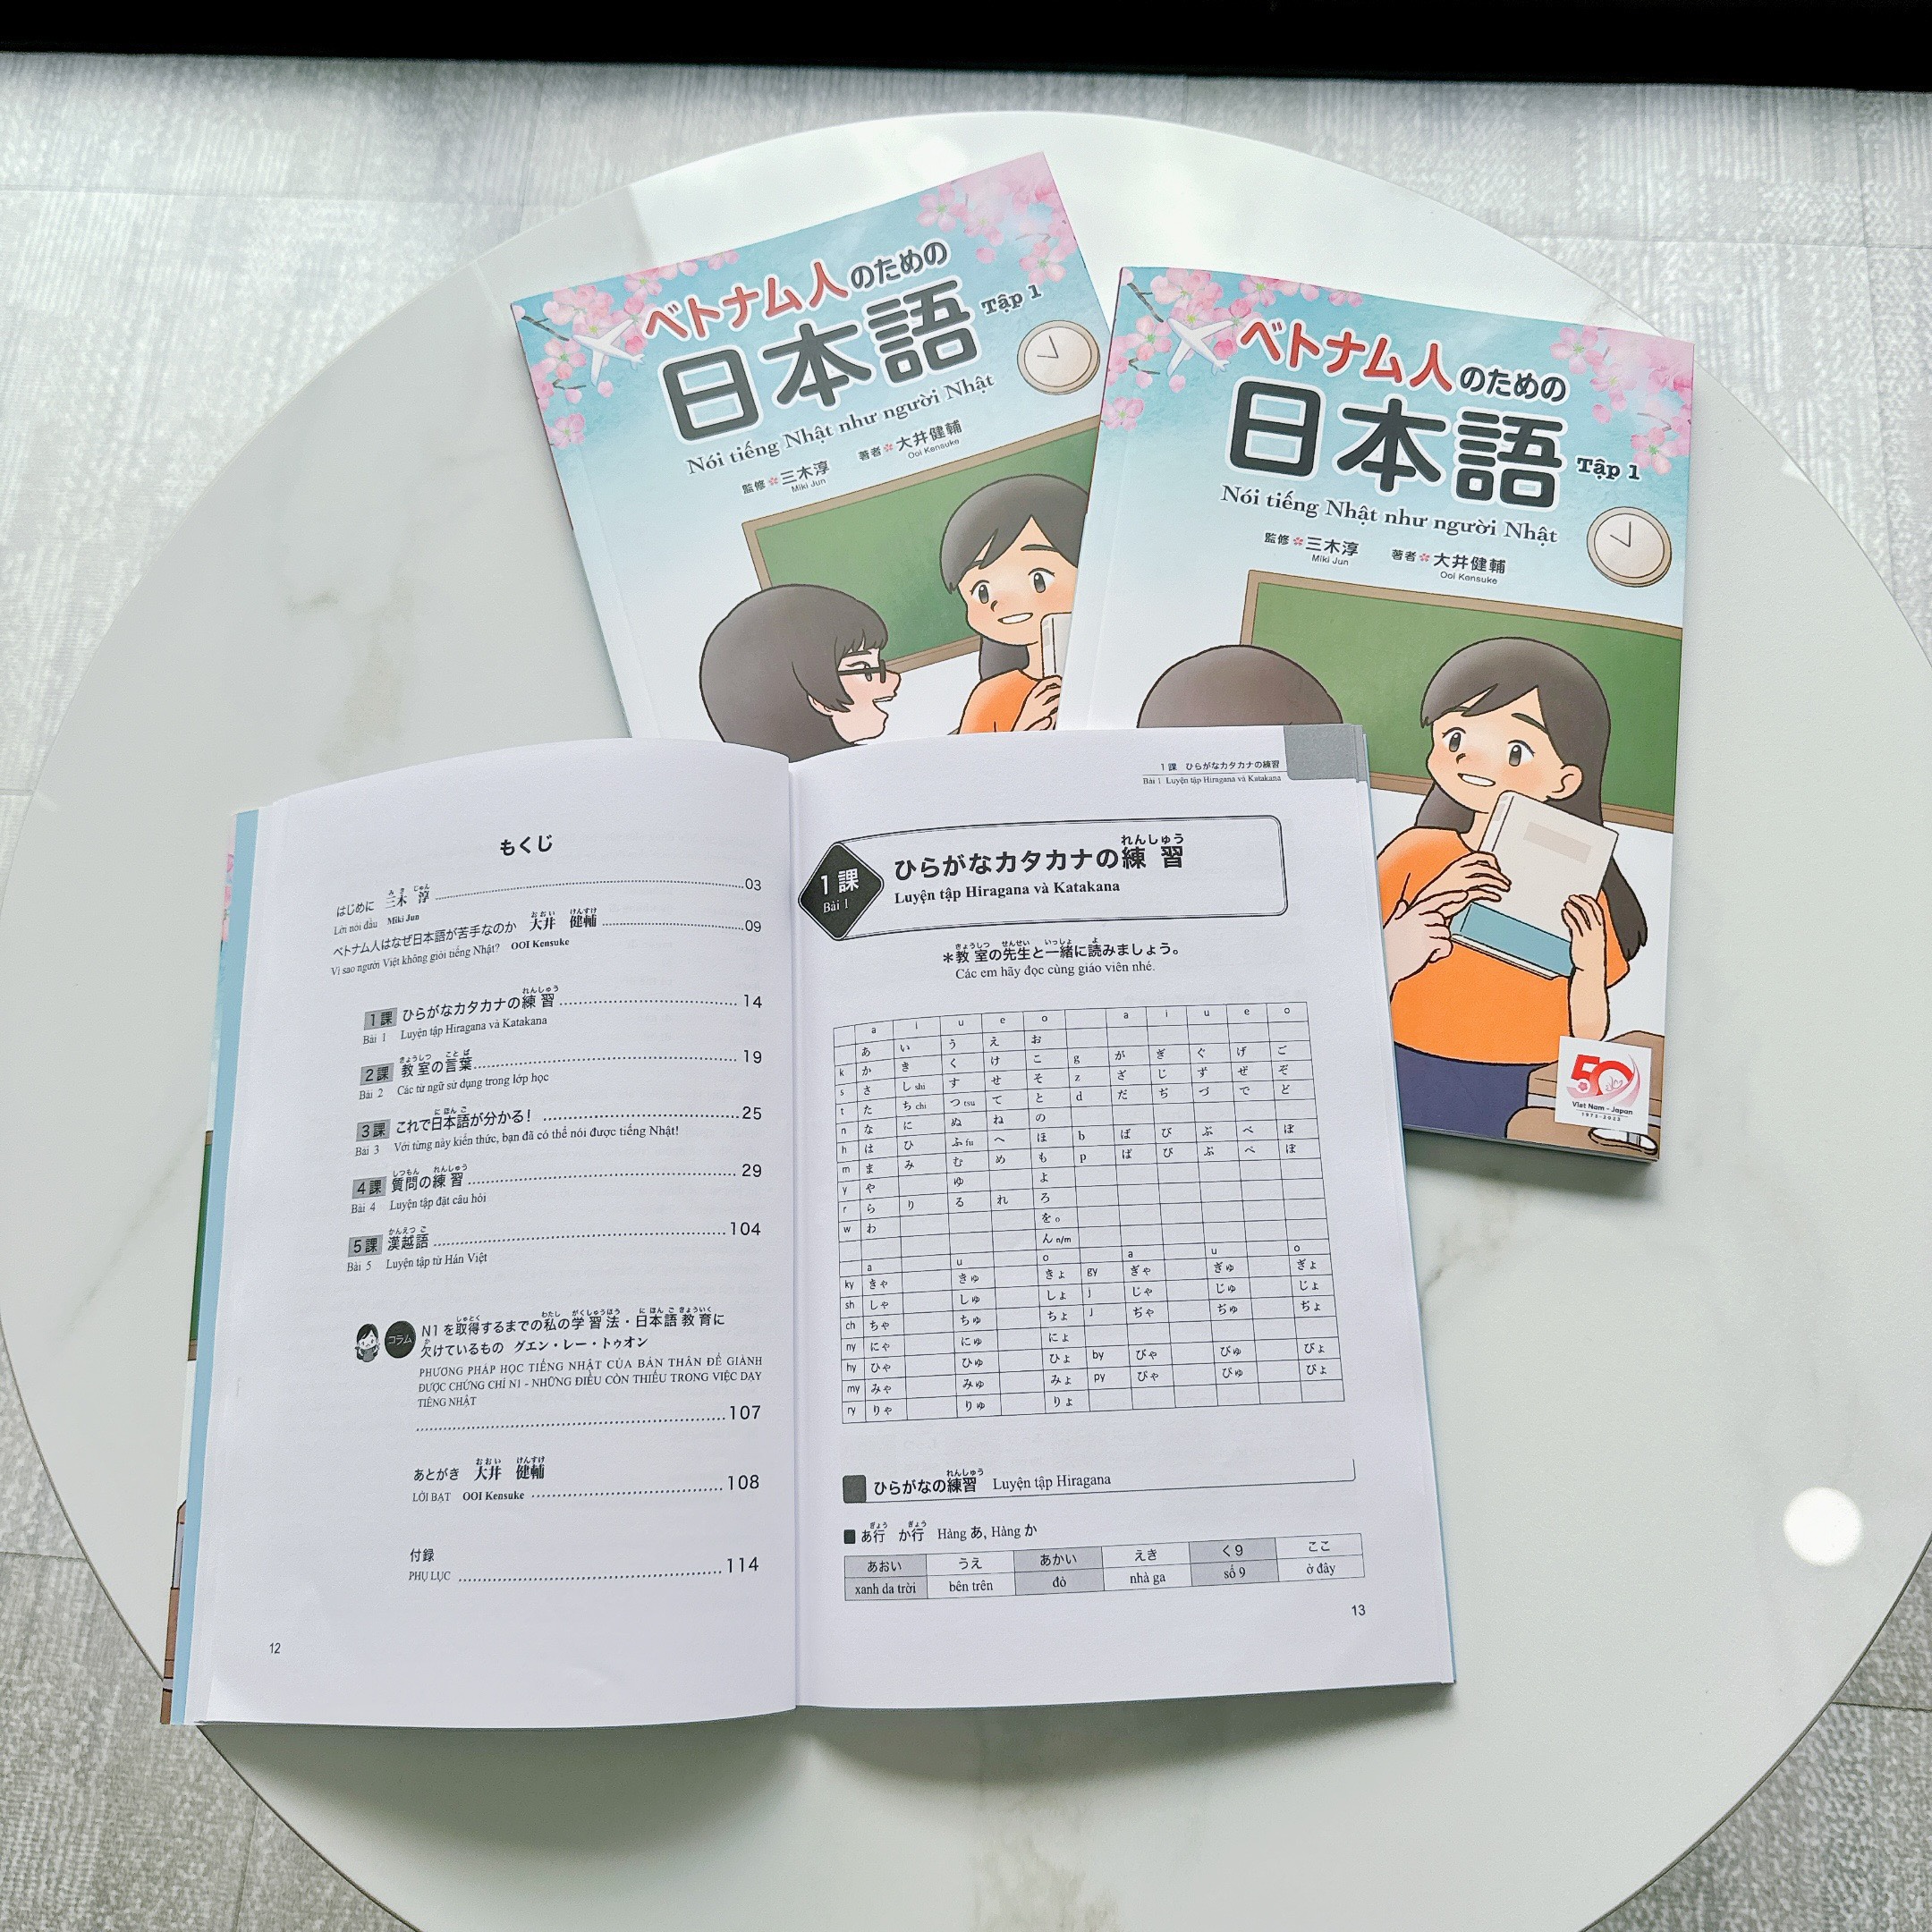 Sách Nói tiếng Nhật như người Nhật (Tập 1)